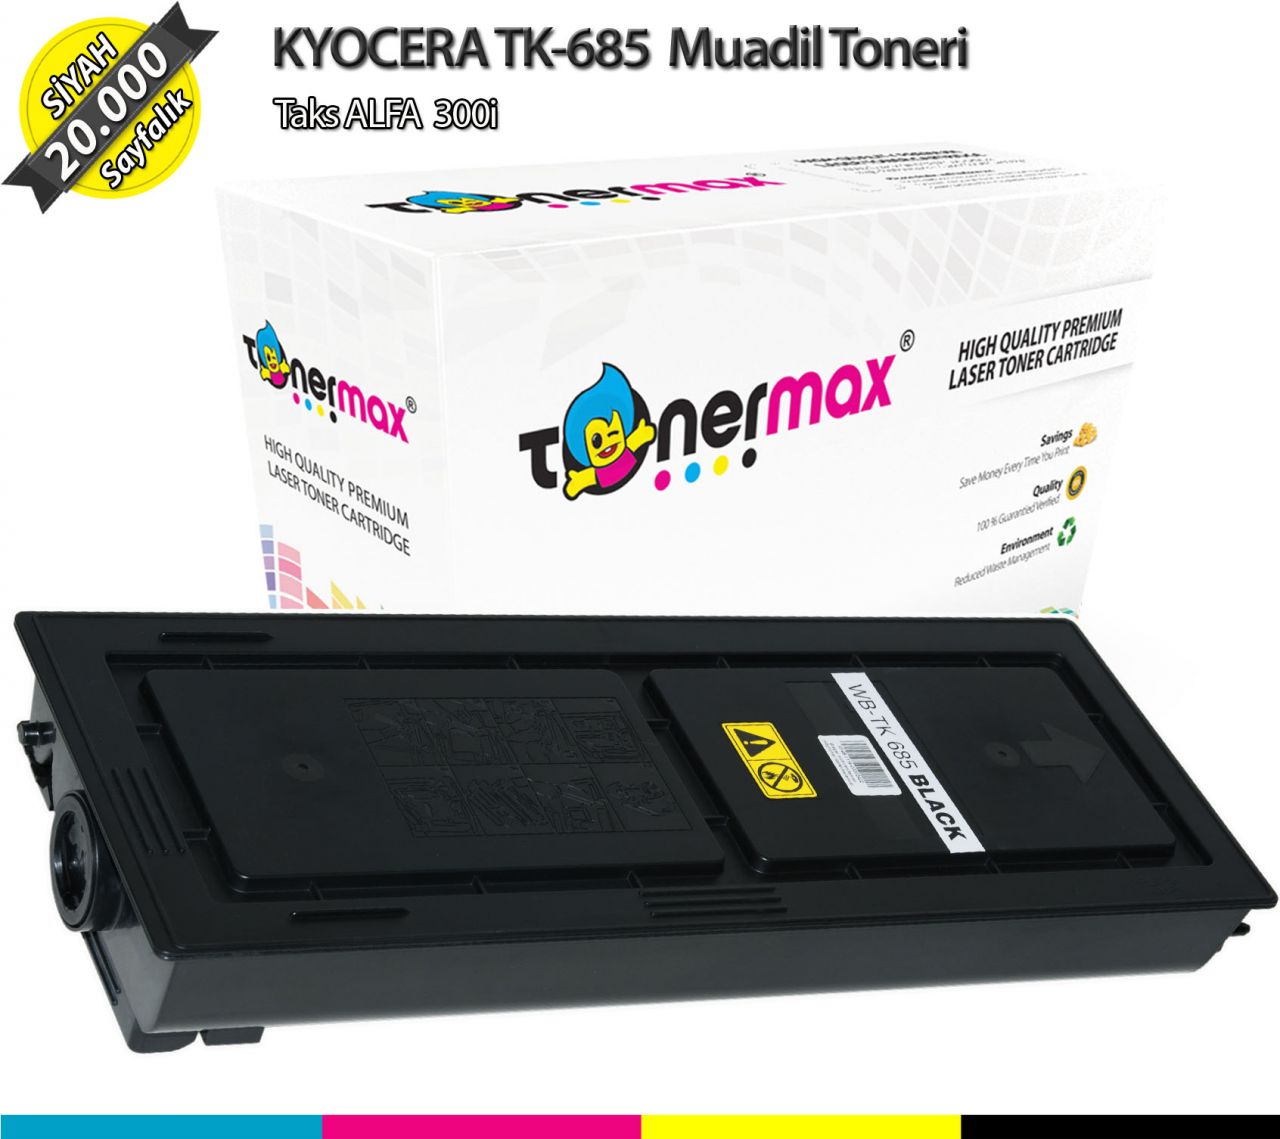 Kyocera TK-685 / TaskALFA 300i Muadil Toner